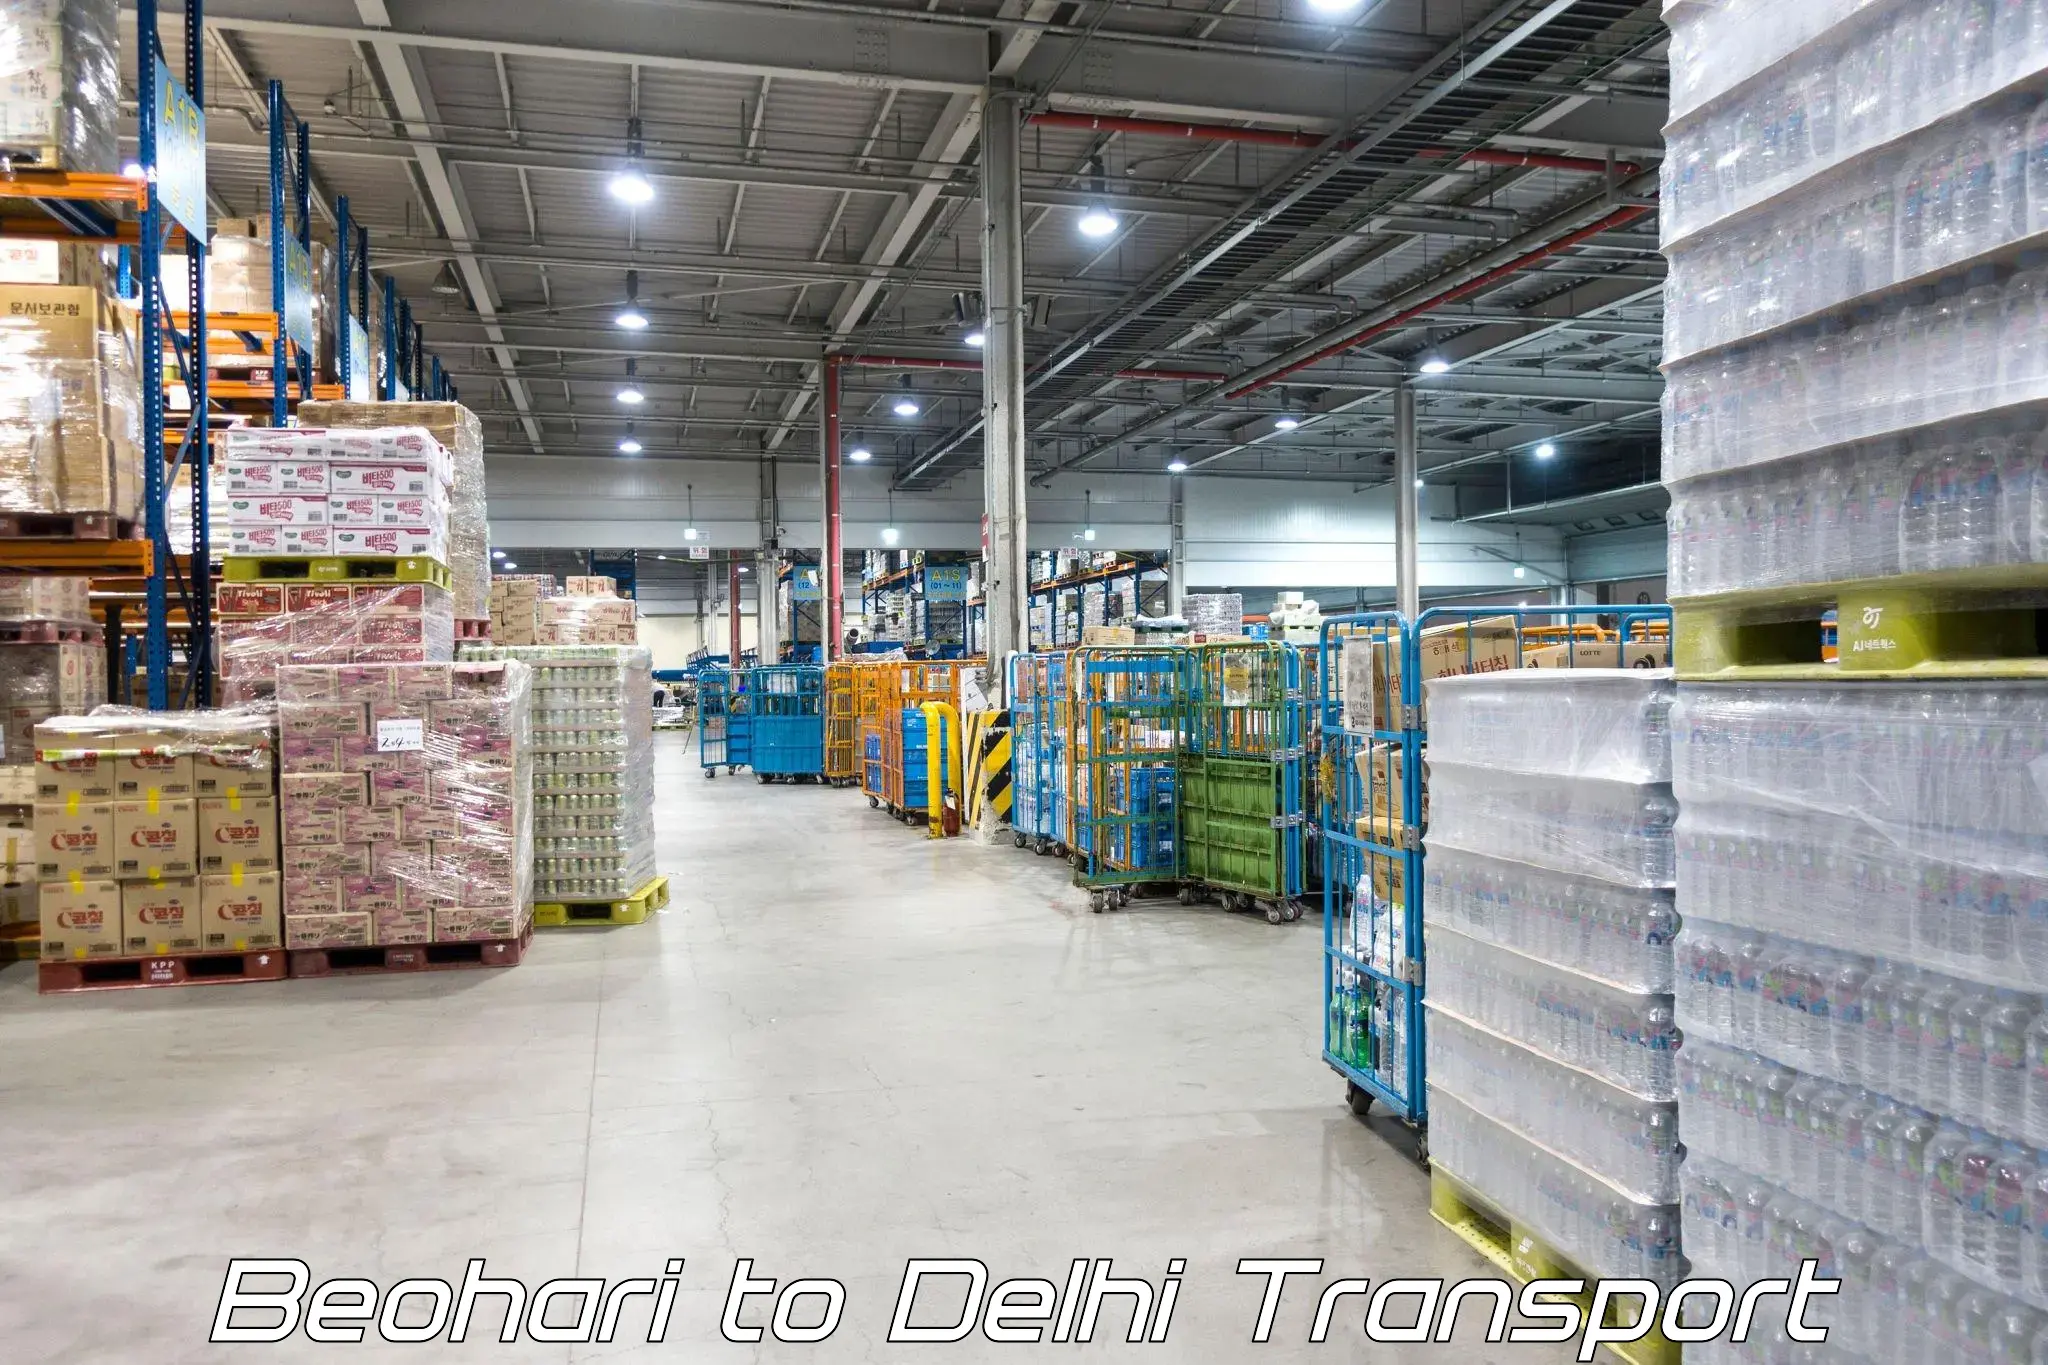 Delivery service Beohari to Delhi